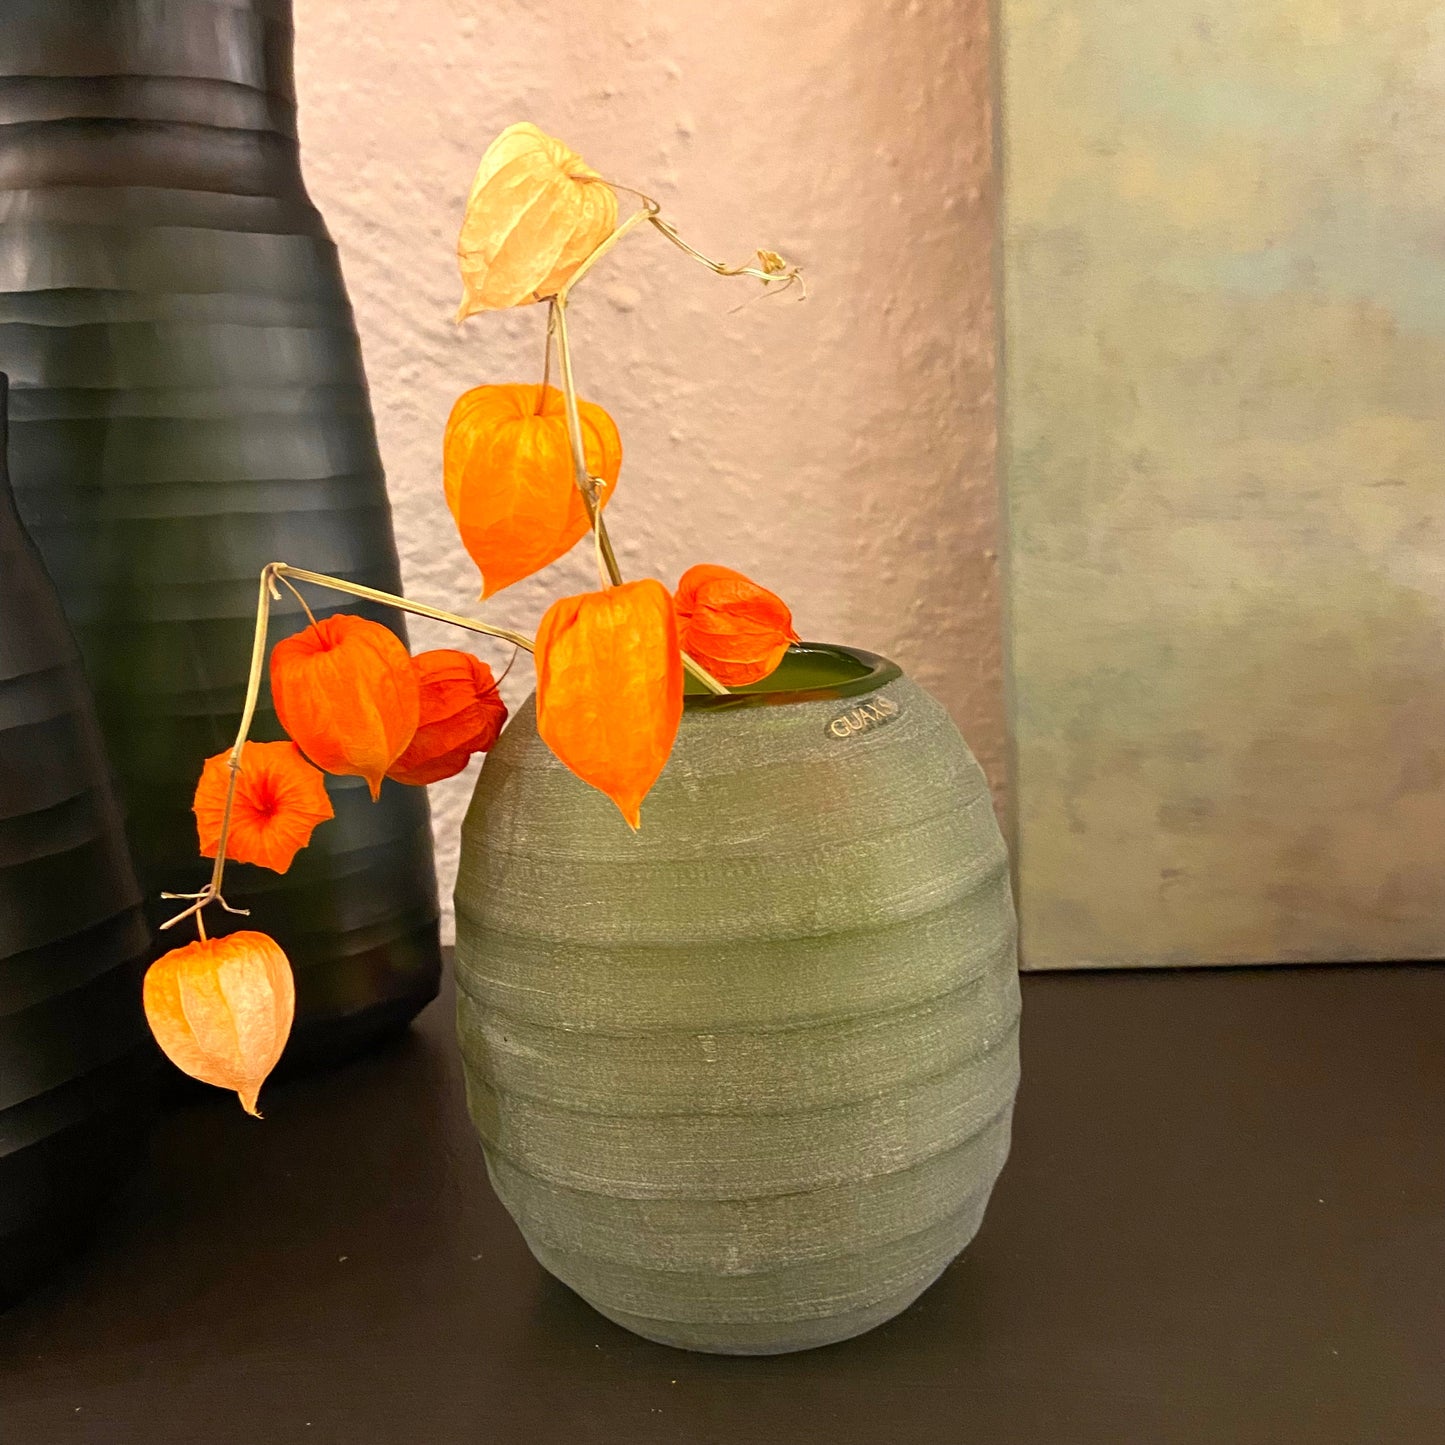 GUAXS  Vase  | BELLY L in grün | Glas, mundgeblasen und von Hand geschliffen